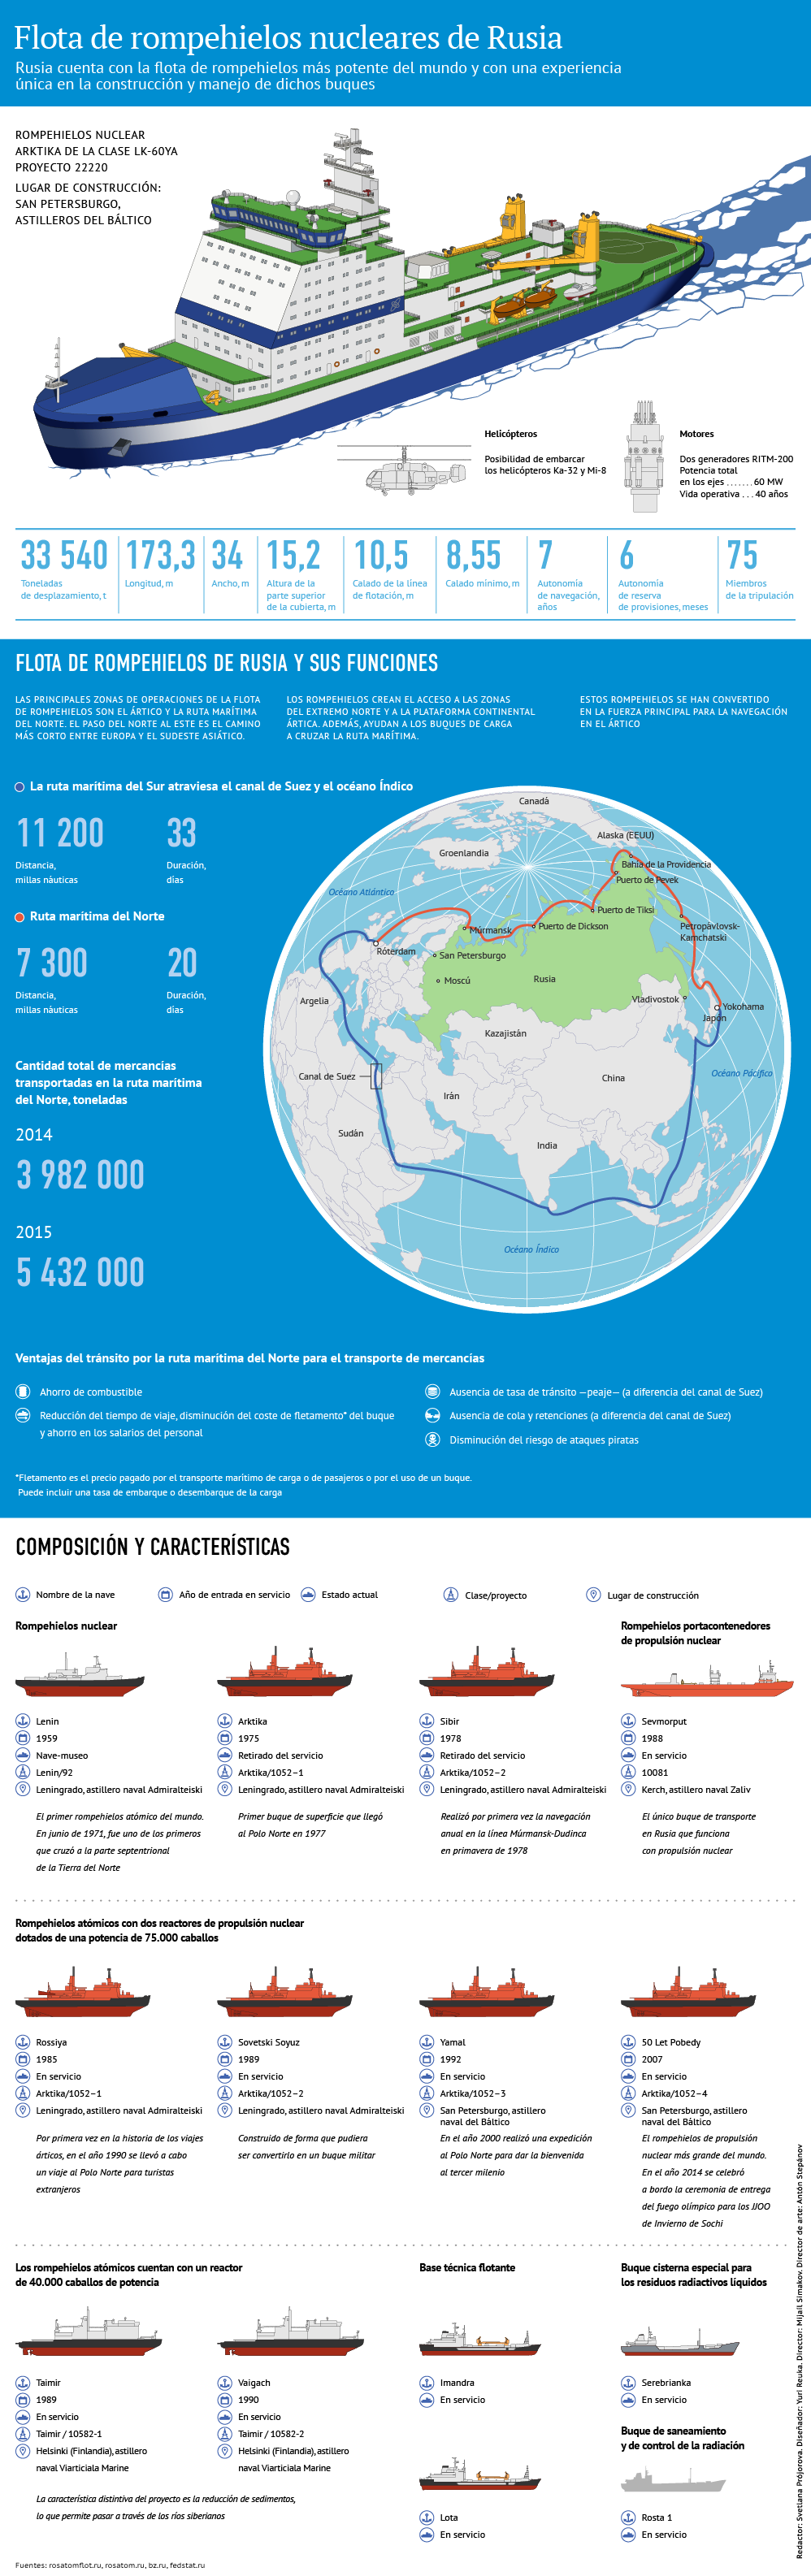 La más potente del mundo: la flota de rompehielos nucleares rusos, al detalle - Sputnik Mundo